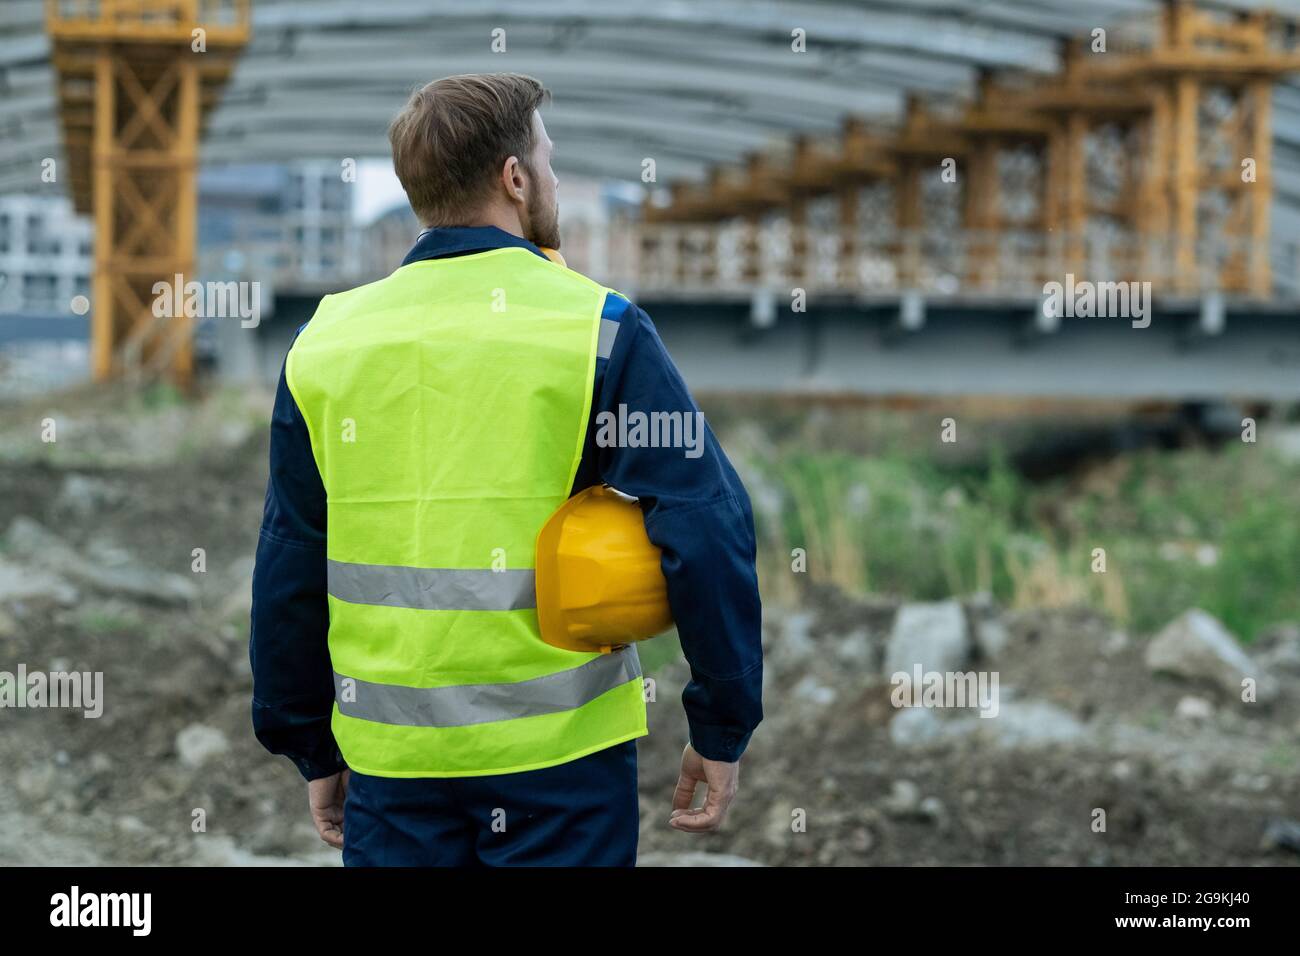 Rückansicht des Baumeisters in reflektierender Kleidung, der auf der  Baustelle steht und arbeitet Stockfotografie - Alamy